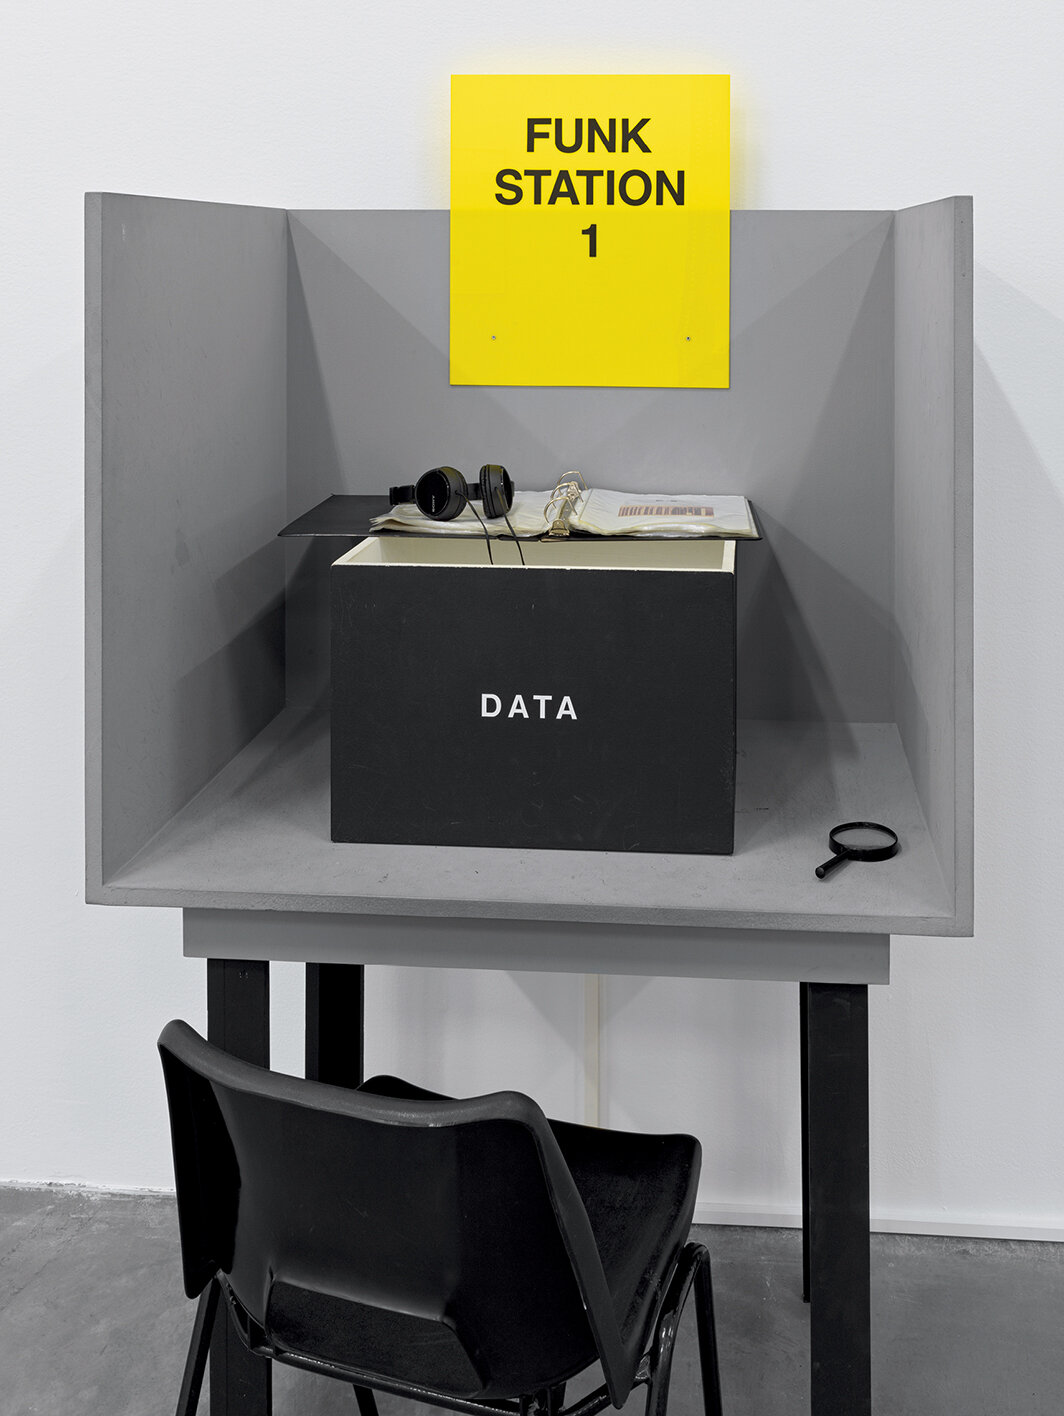 蕾妮·格林，《进口/出口放克办公室》（局部），1992-93，混合媒介，金属层架、书籍、杂志、报纸、收藏品、BETA录像带、25小时数字化影像、两台显示器、一个影像投影、磁带、声音、亚克力标志、四个木制结构、四个架子上的亚克力标志、四台磁带播放器、三十个印有橡皮章文字的木牌。展览现场，苏黎世米格罗斯博物馆（Migros Museum），2022. 摄影：Stefan Altenburger.